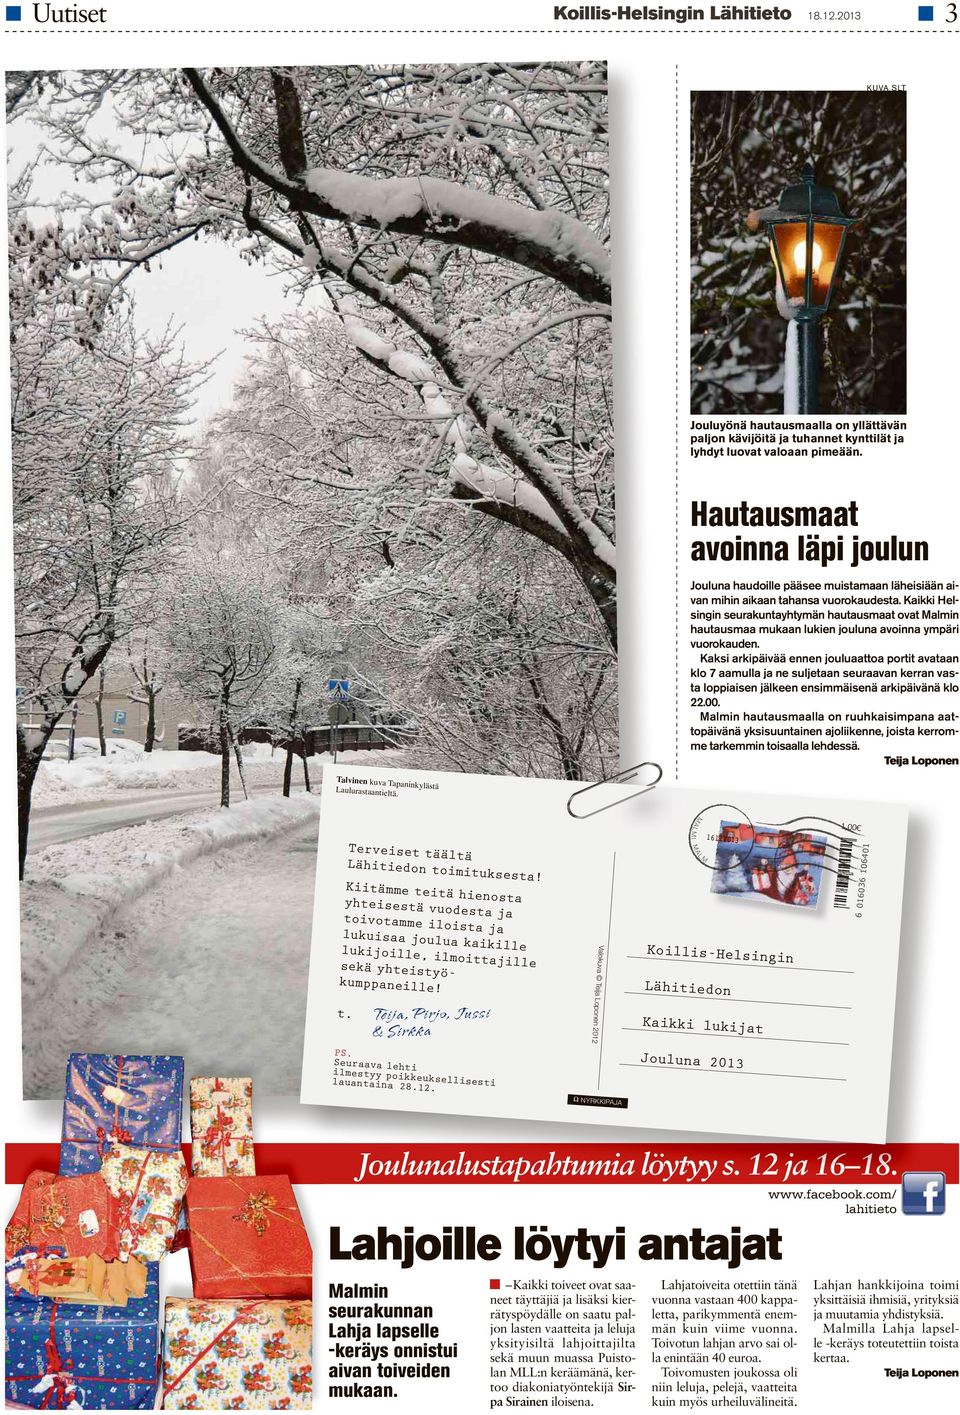 Kaikki Helsingin seurakuntayhtymän hautausmaat ovat Malmin hautausmaa mukaan lukien jouluna avoinna ympäri vuorokauden.